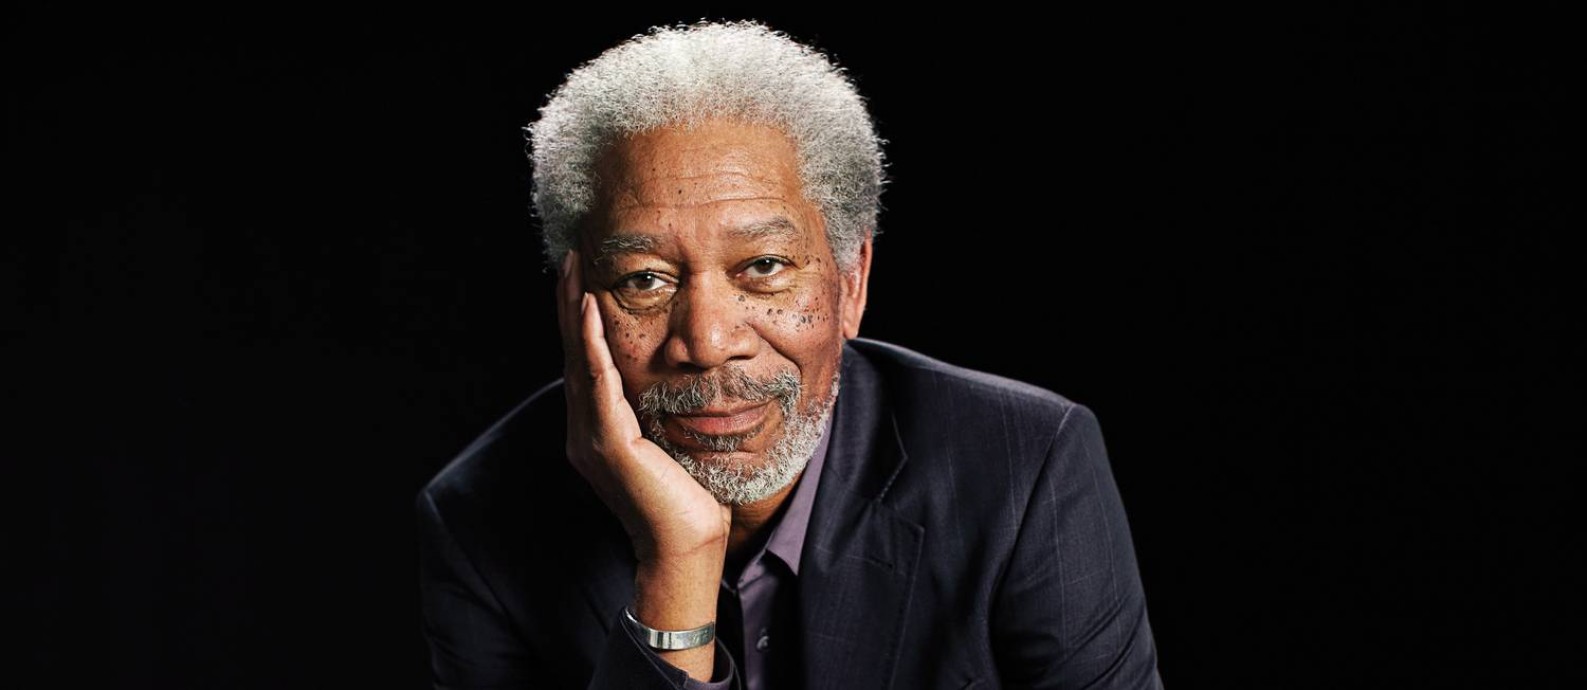 Morgan Freeman é uma das celebridades que pensou nas community colleges para seu ensino acadêmico.